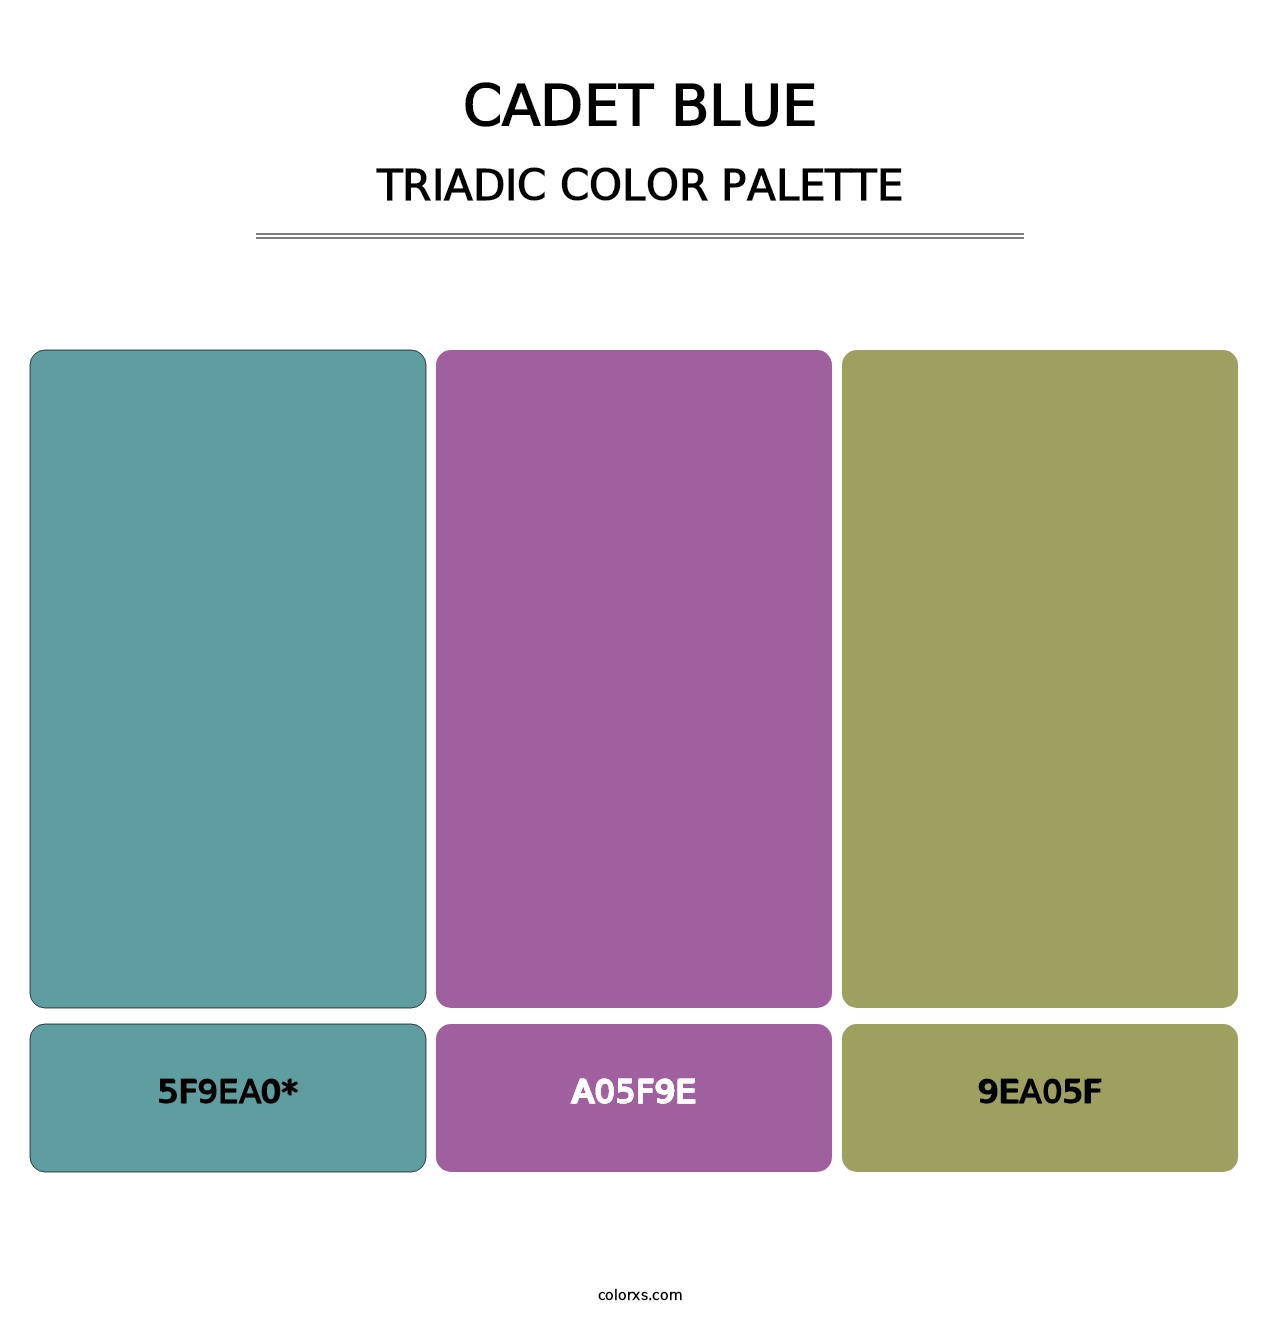 Cadet Blue - Triadic Color Palette